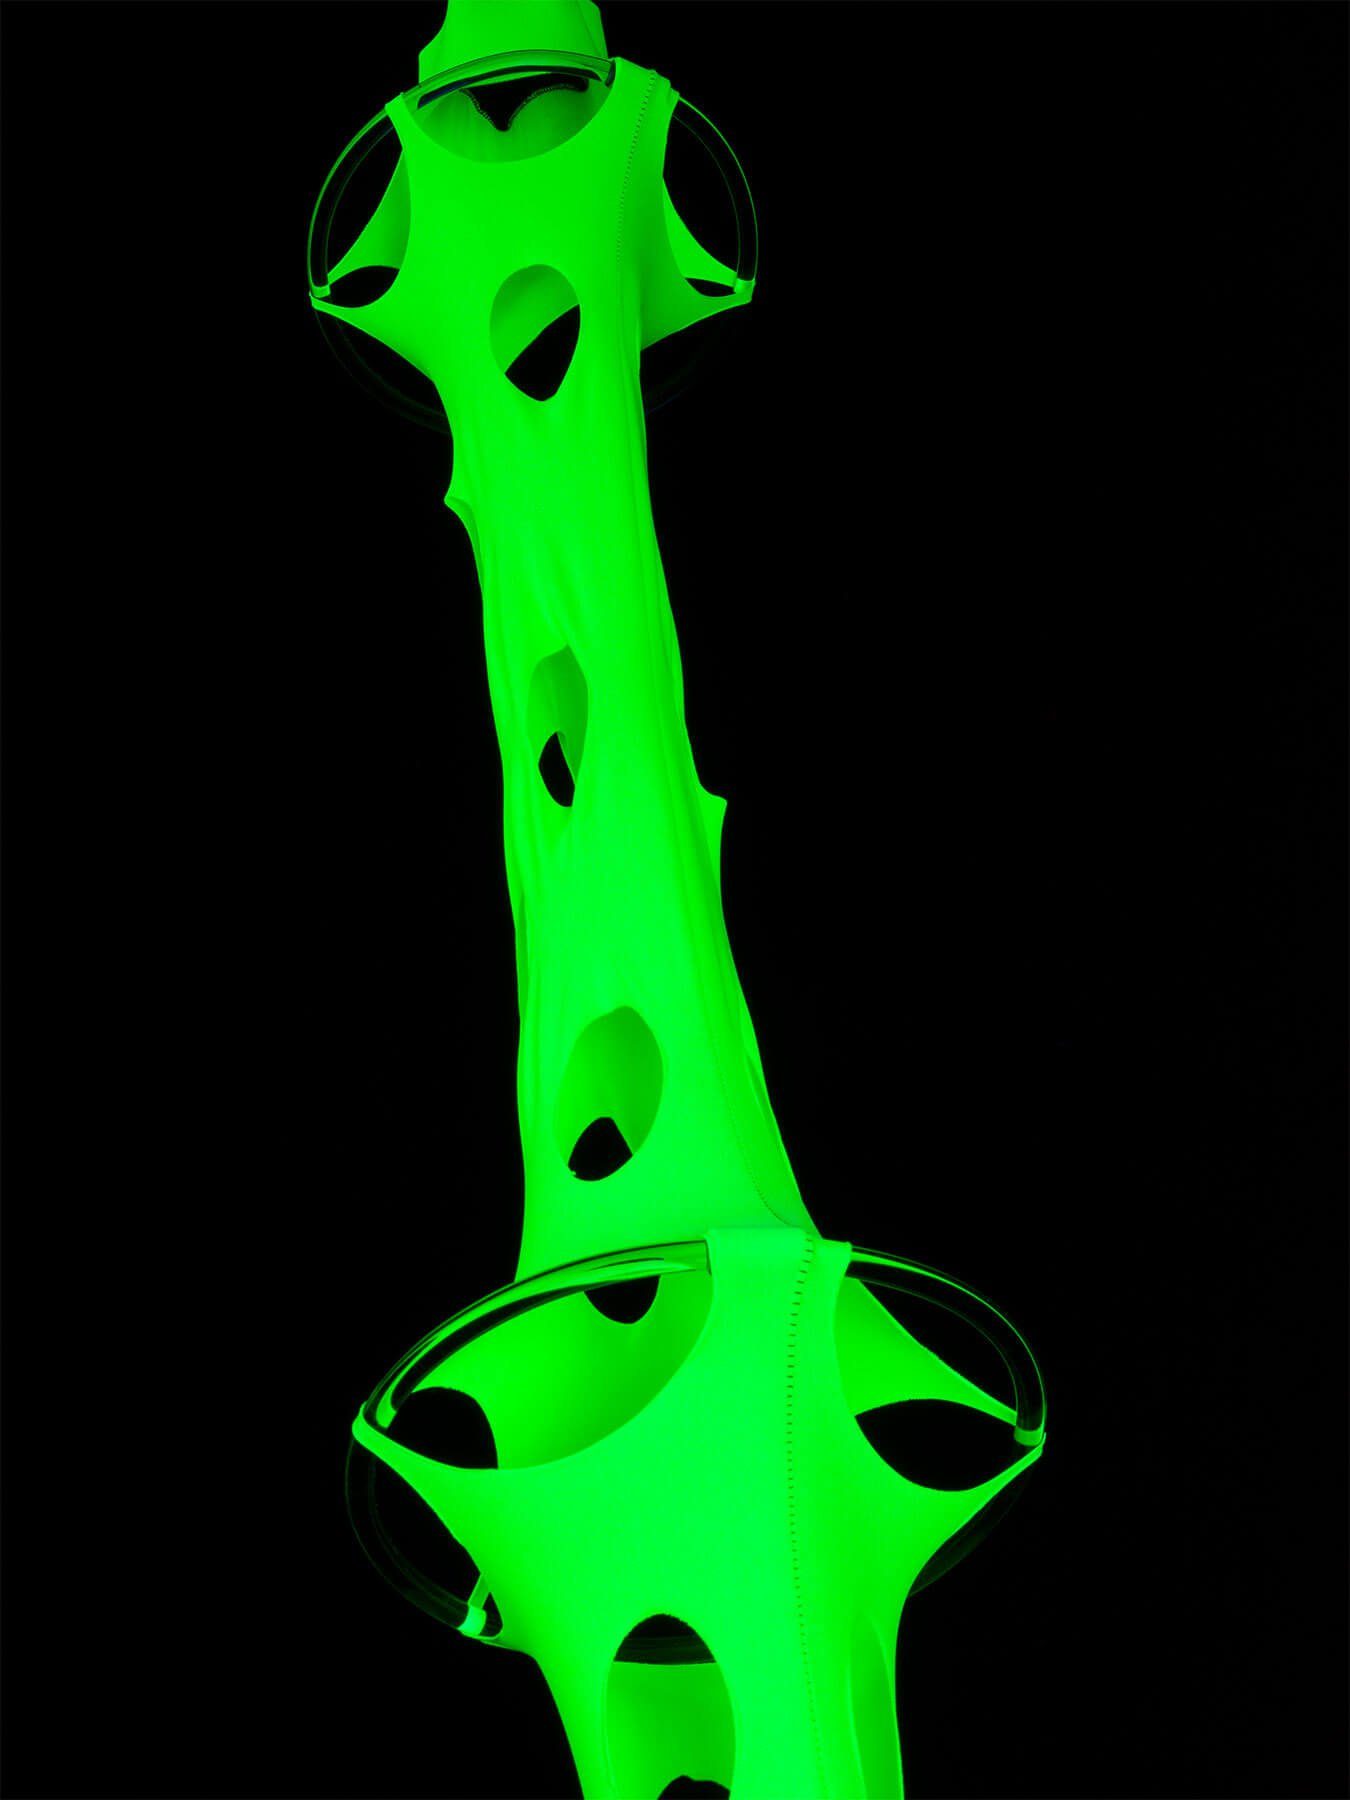 PSYWORK Wanddekoobjekt 2,50m Schwarzlicht leuchtet "Neon 25cm, Schwarzlicht unter Objekt Deko Psy UV-aktiv, Tentakel Gelb", Ø